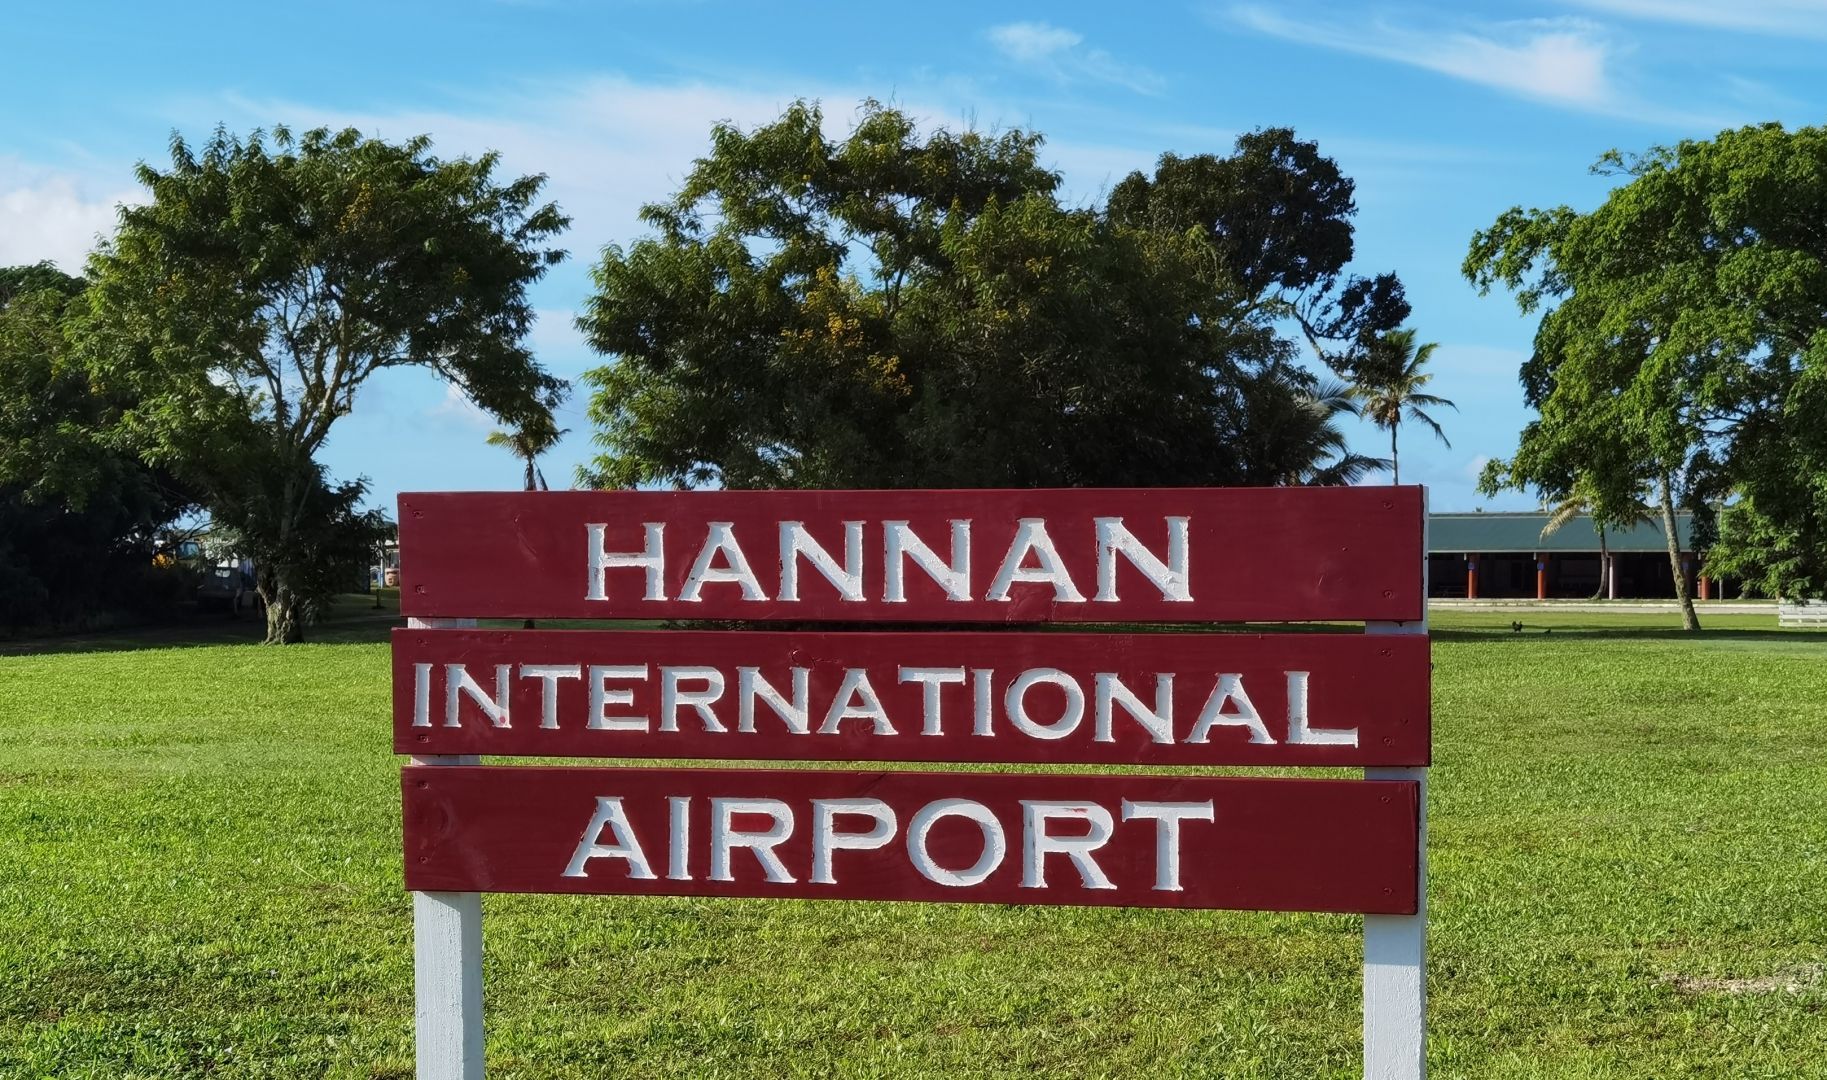 hannan international airport sign